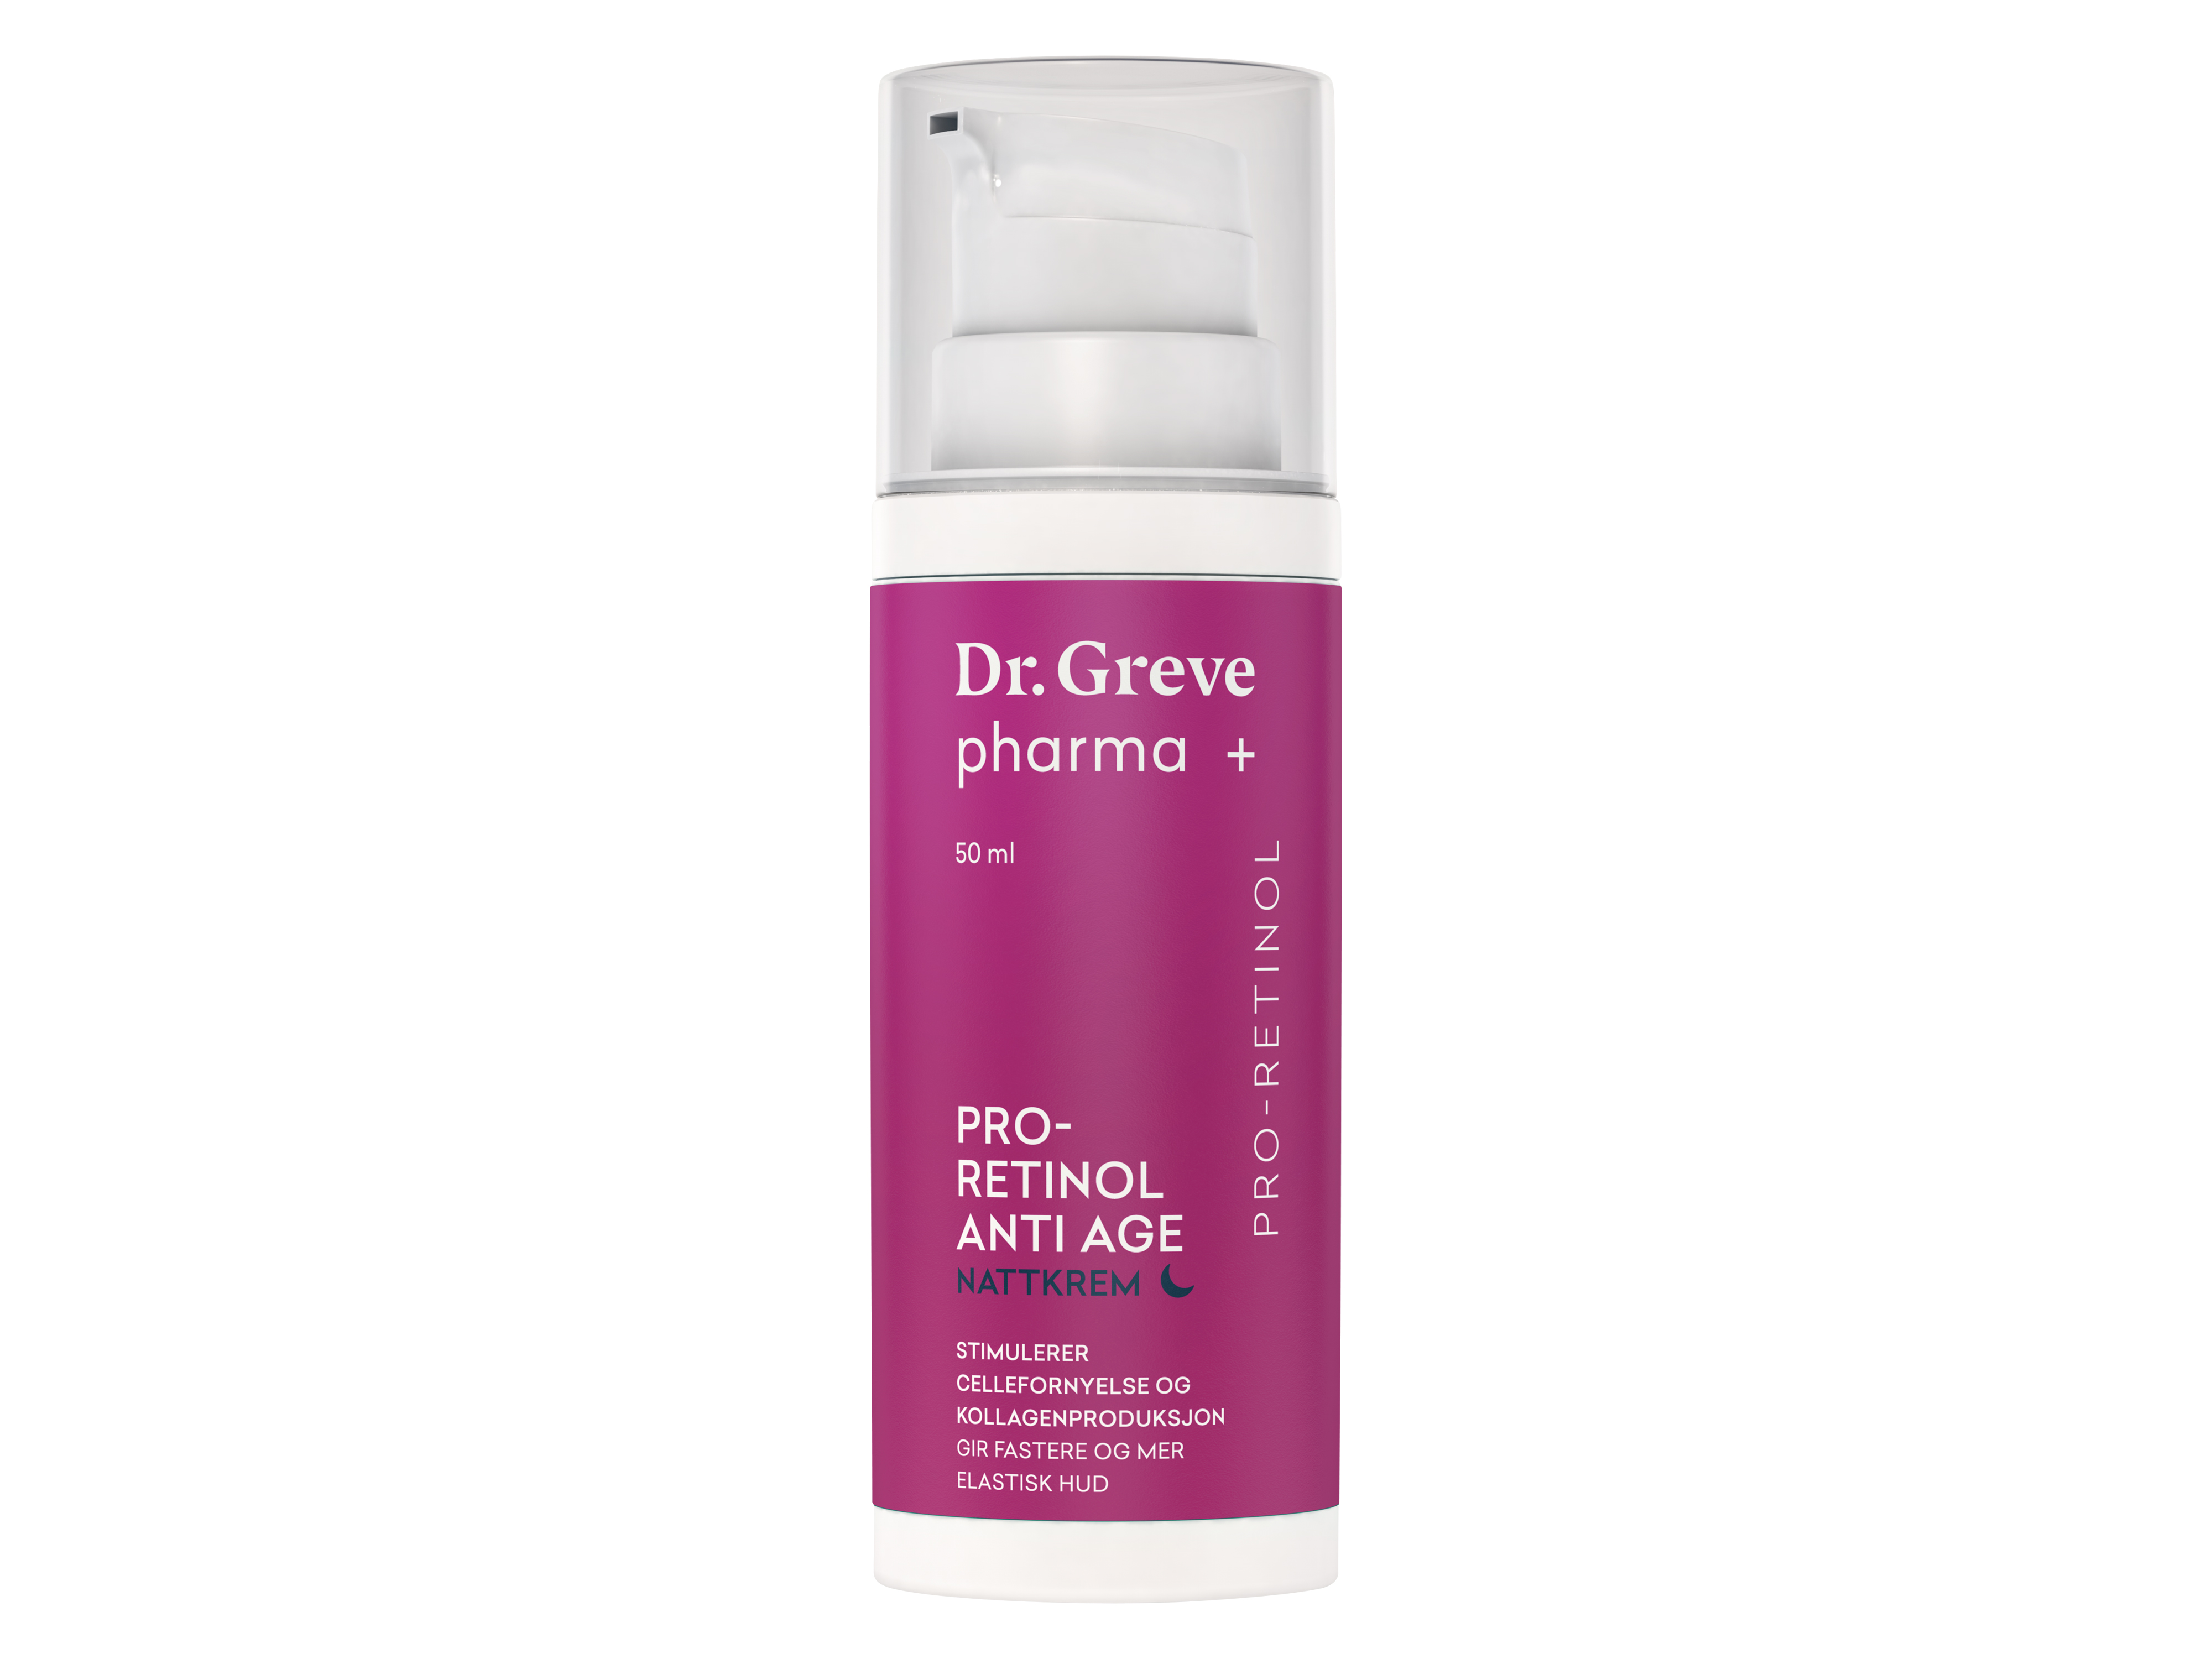 Dr Greve Pharma Pro-Retinol Anti Age Nattkrem, 50 ml